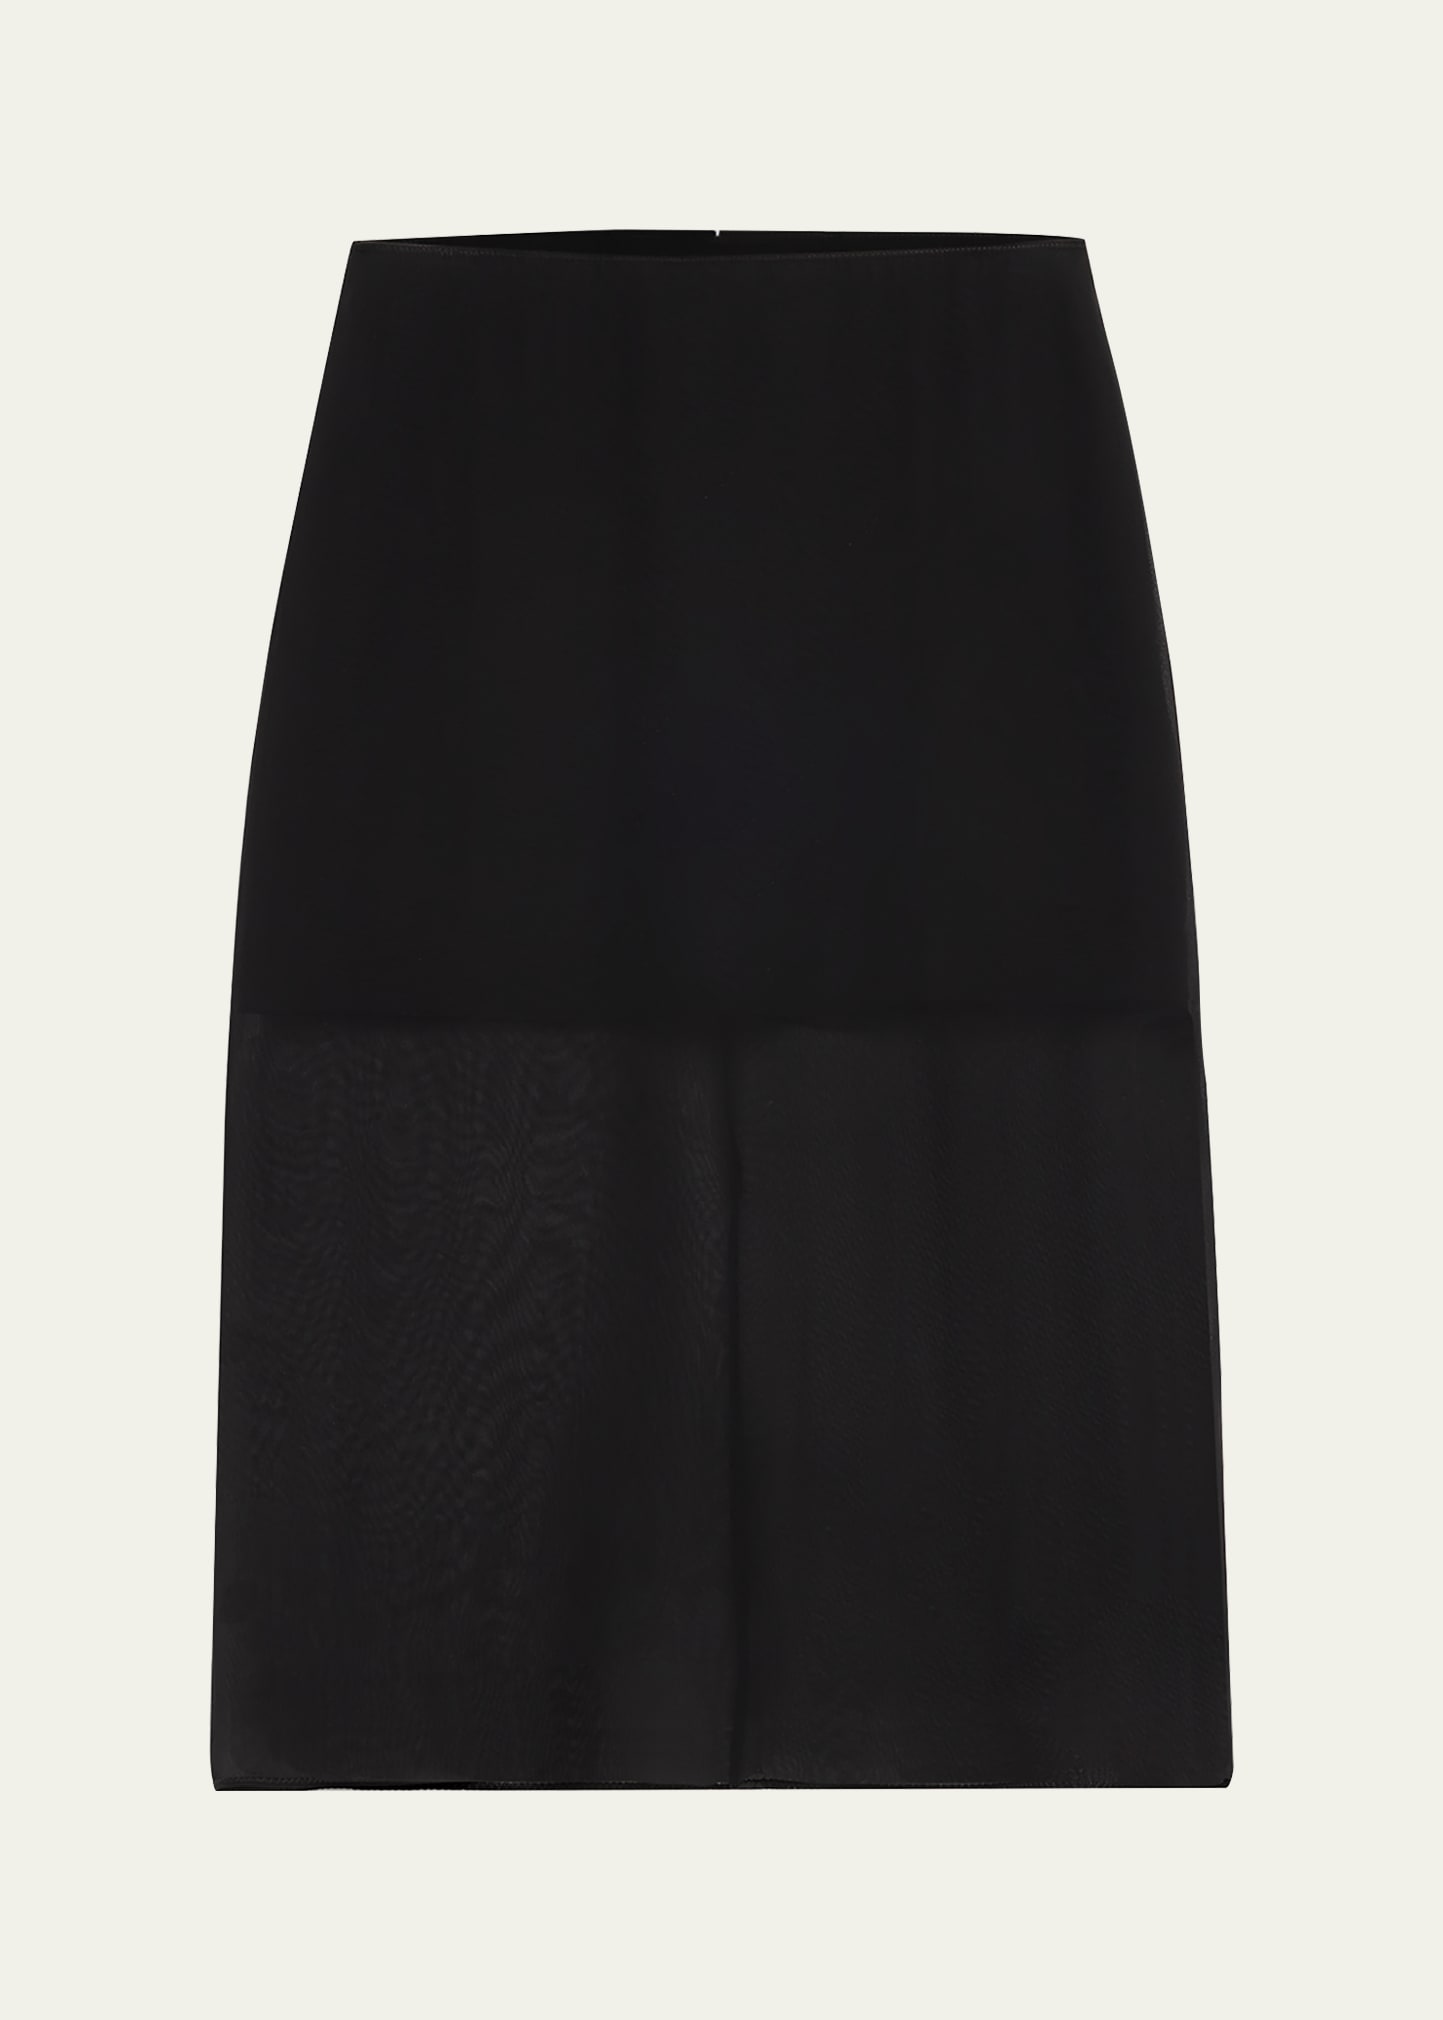 Sheer Chiffon Midi Pencil Skirt